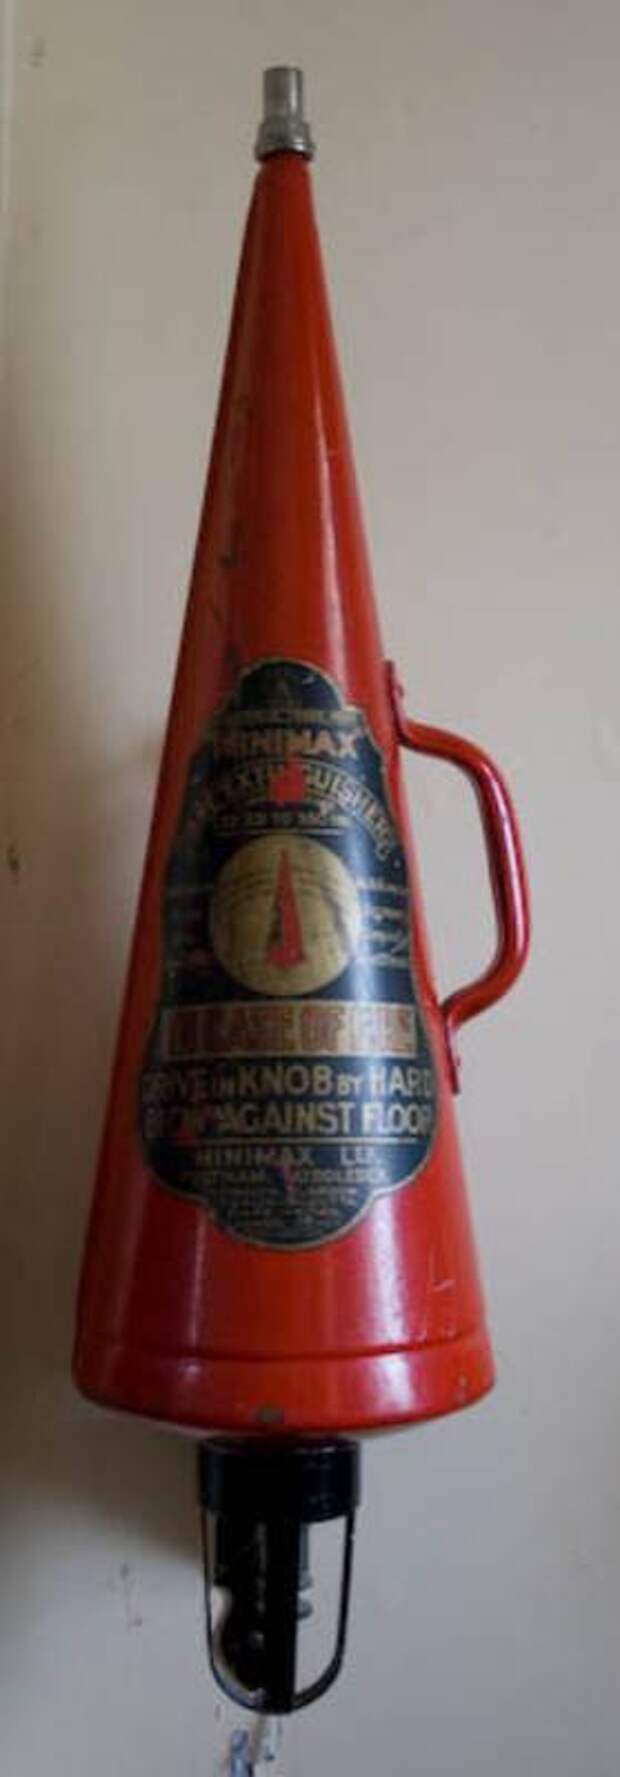 Первый огнетушитель изготовлен. Пенный огнетушитель Лорана. Пеногон огнетушитель эклер. Огнетушитель 1934 год.